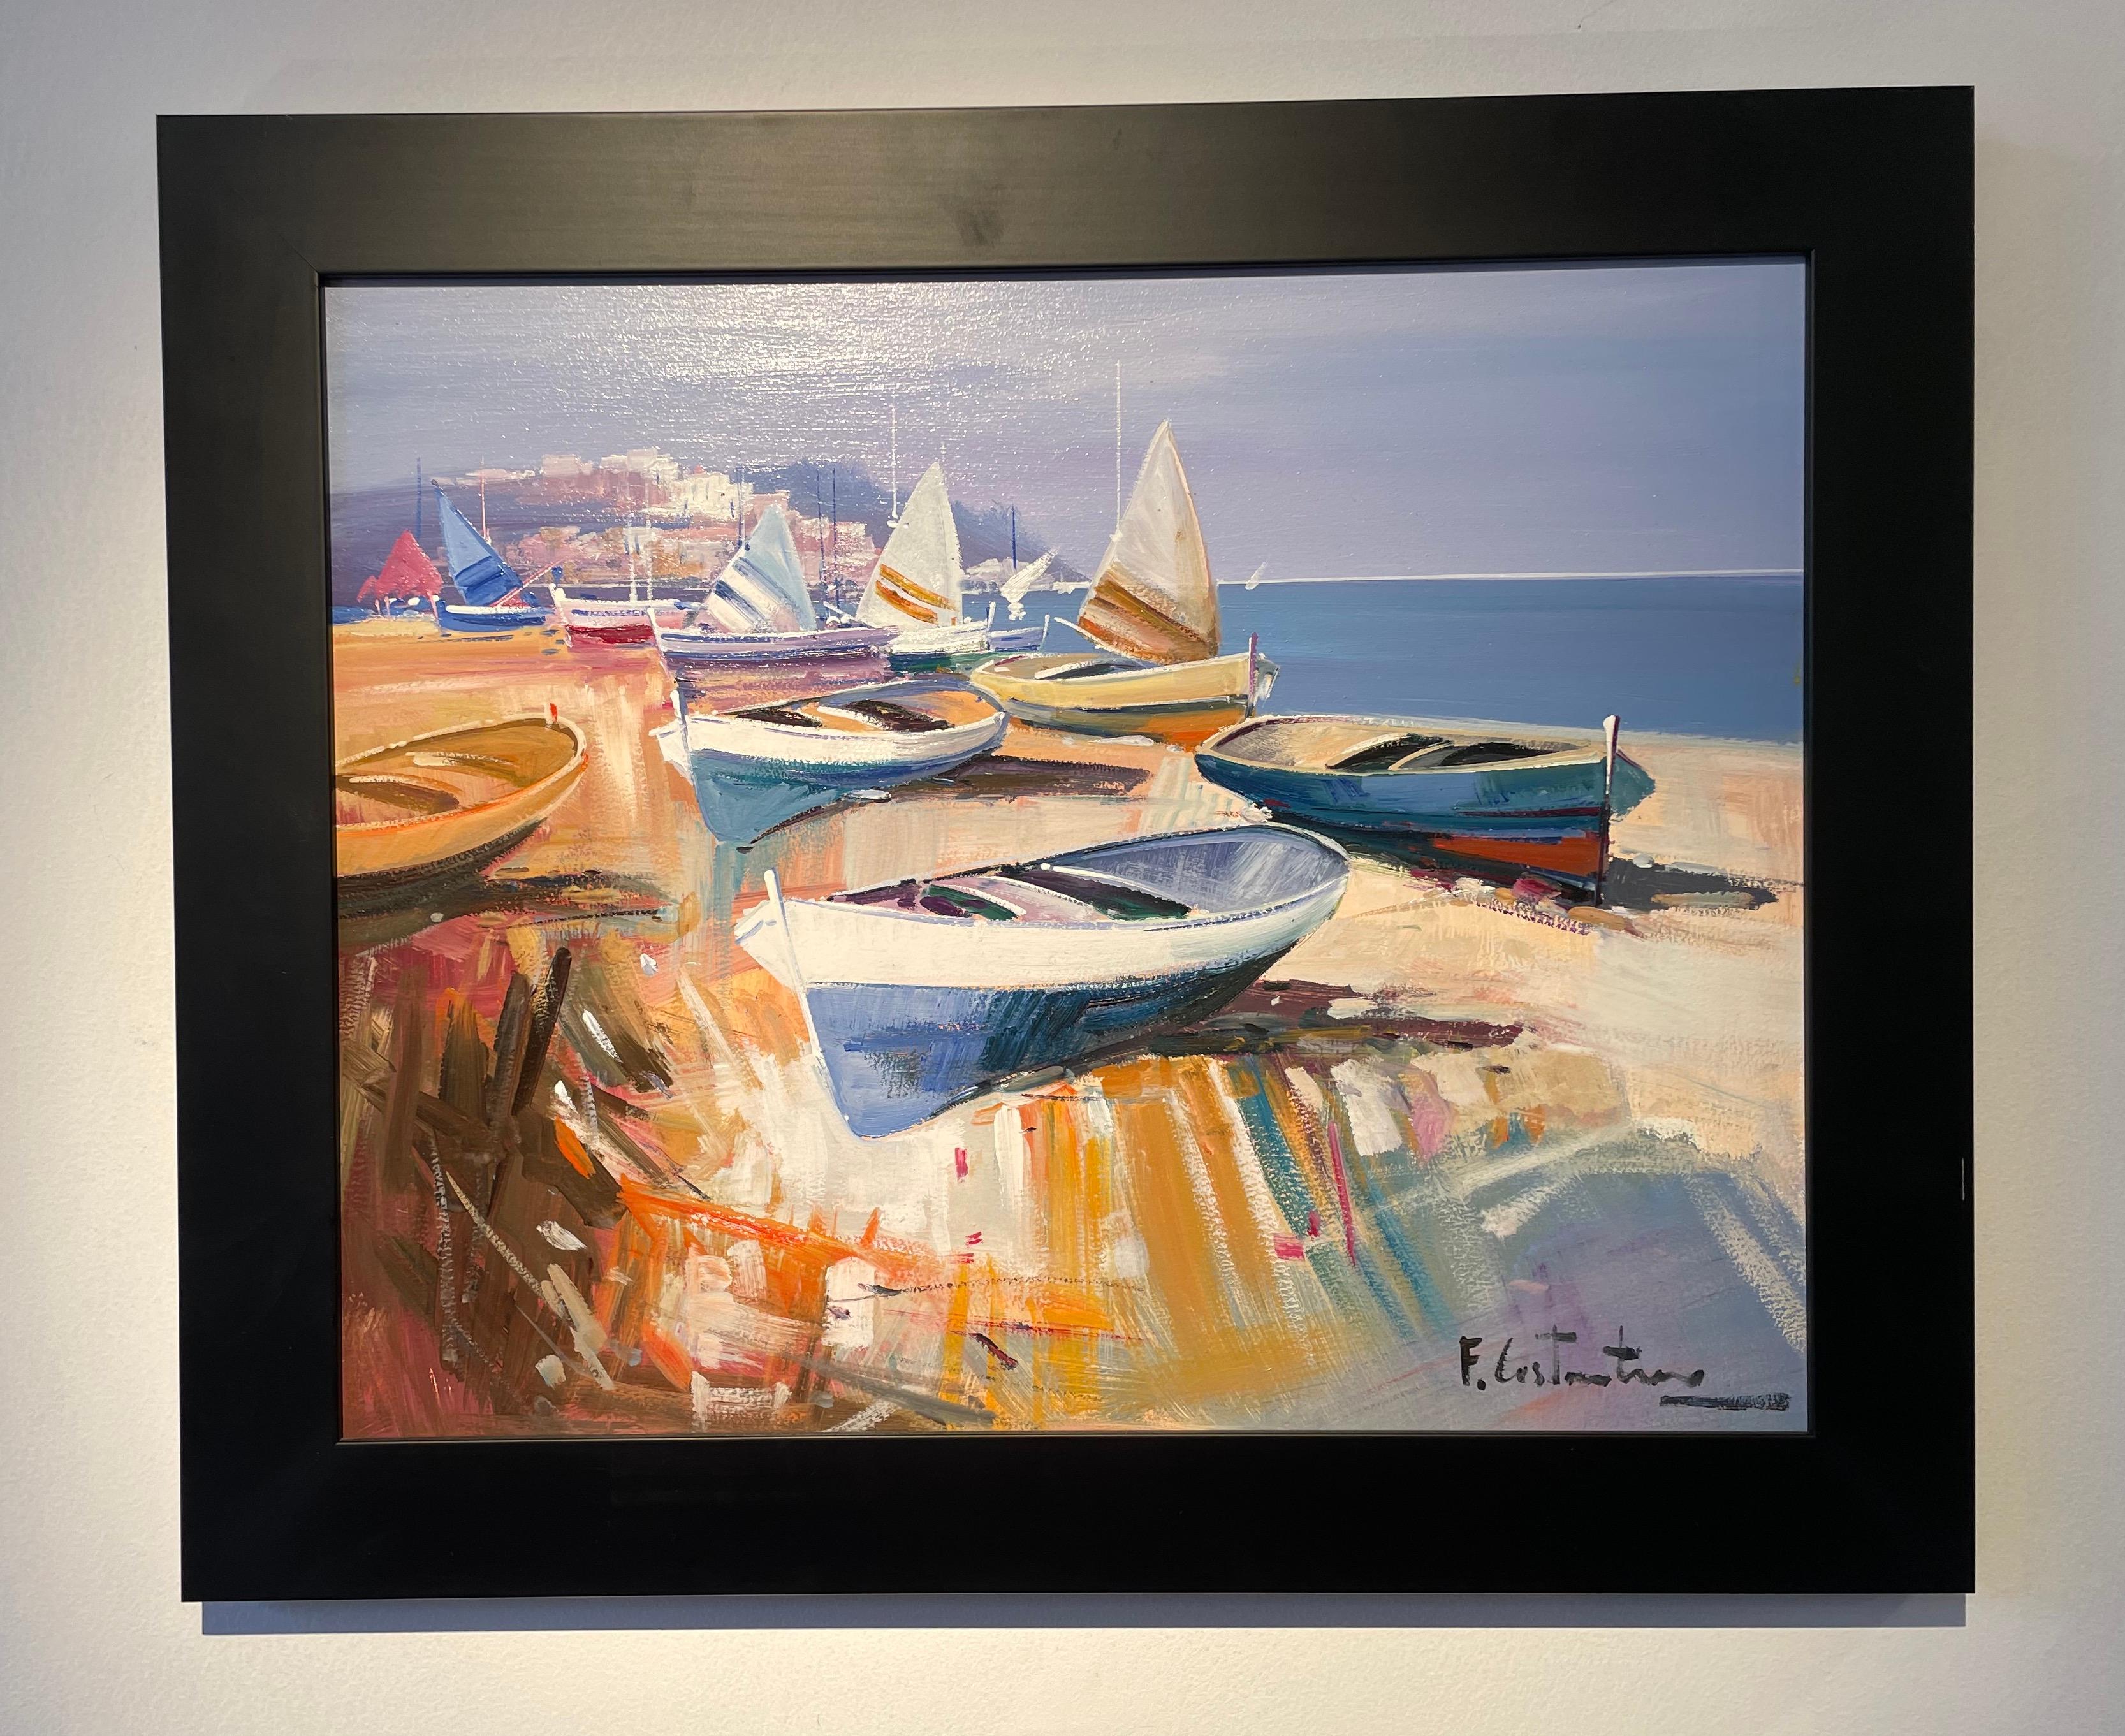 Landscape Painting Fabio Constantino - « Boats on the Shore » - Peinture contemporaine colorée représentant des bateaux, du sable et de la mer 